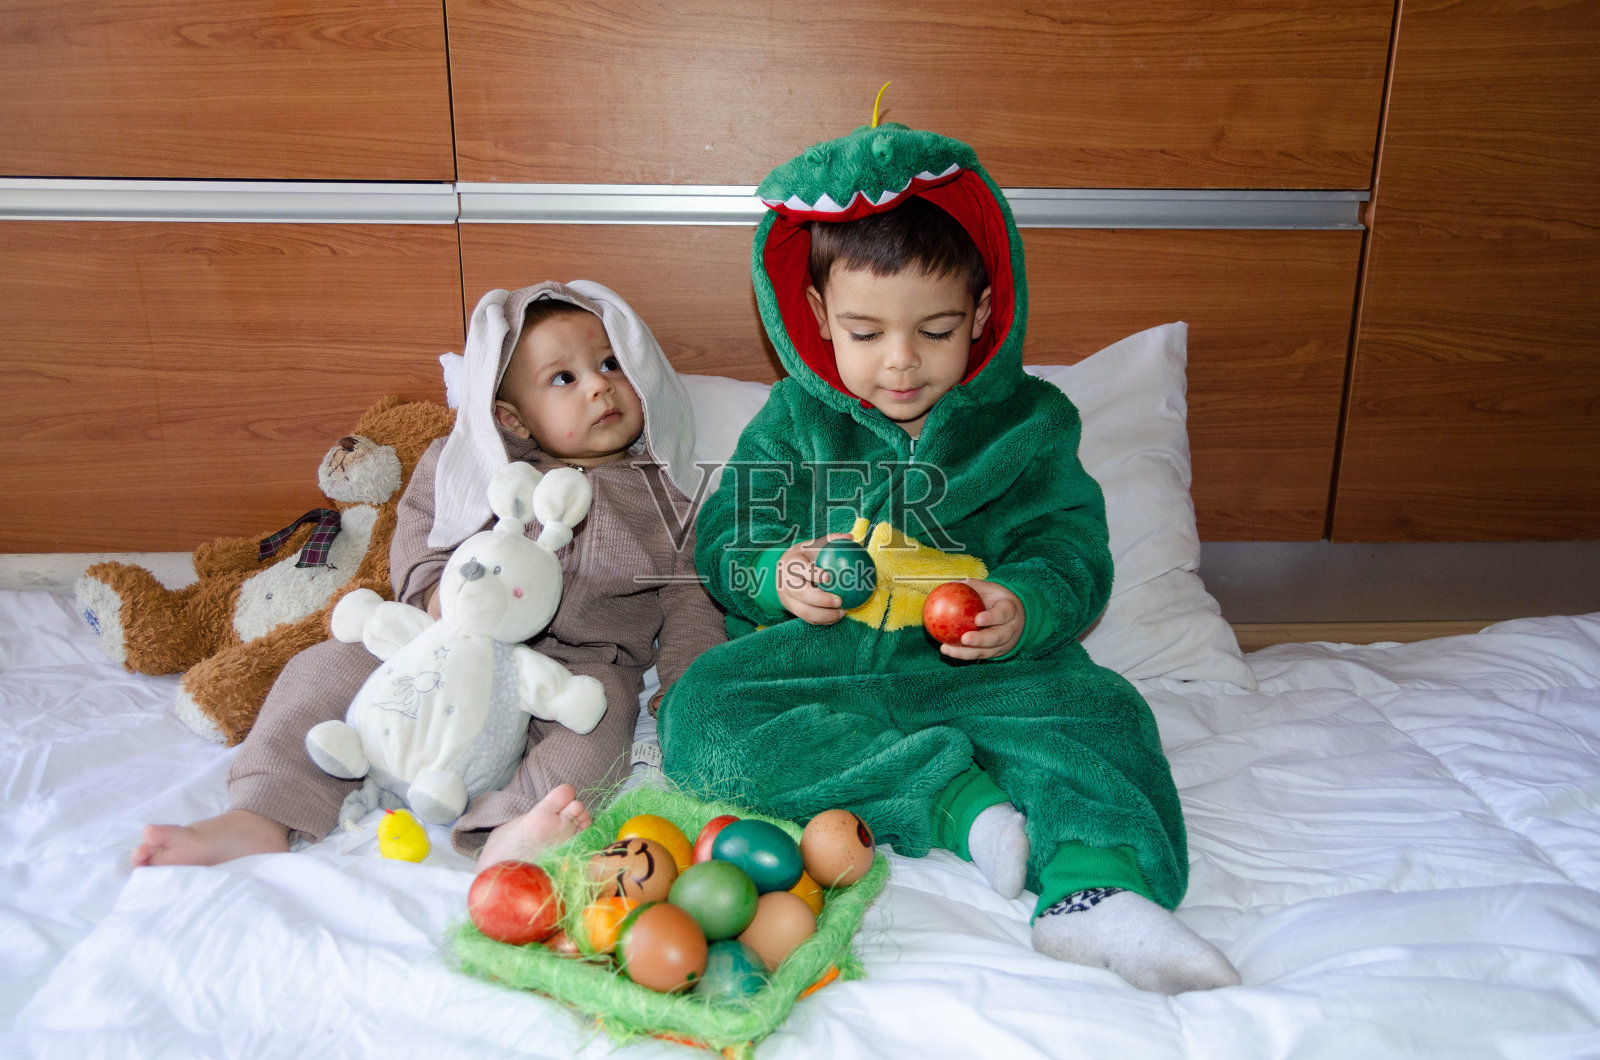 可爱的兄弟姐妹们穿着兔子和恐龙的服装玩着彩色的复活节彩蛋。Wgg狩猎和童年照片摄影图片